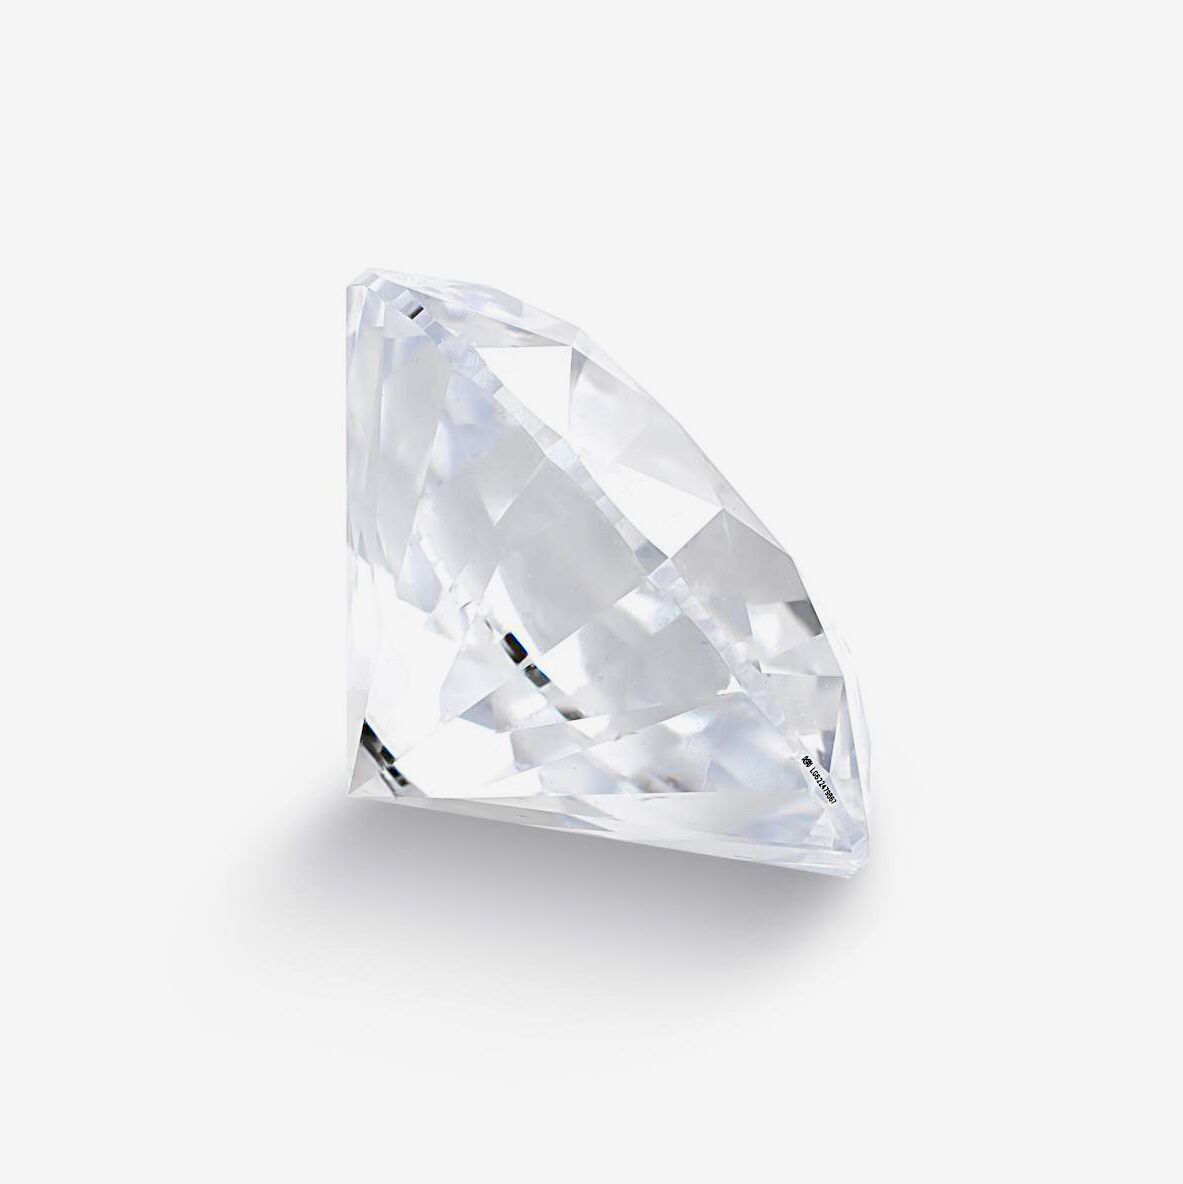 Round Brilliant Cut 5.02 Carat Diamond, E Colour, VS2 Clarity, Ideal Cut - IGI Cert - Image 3 of 4